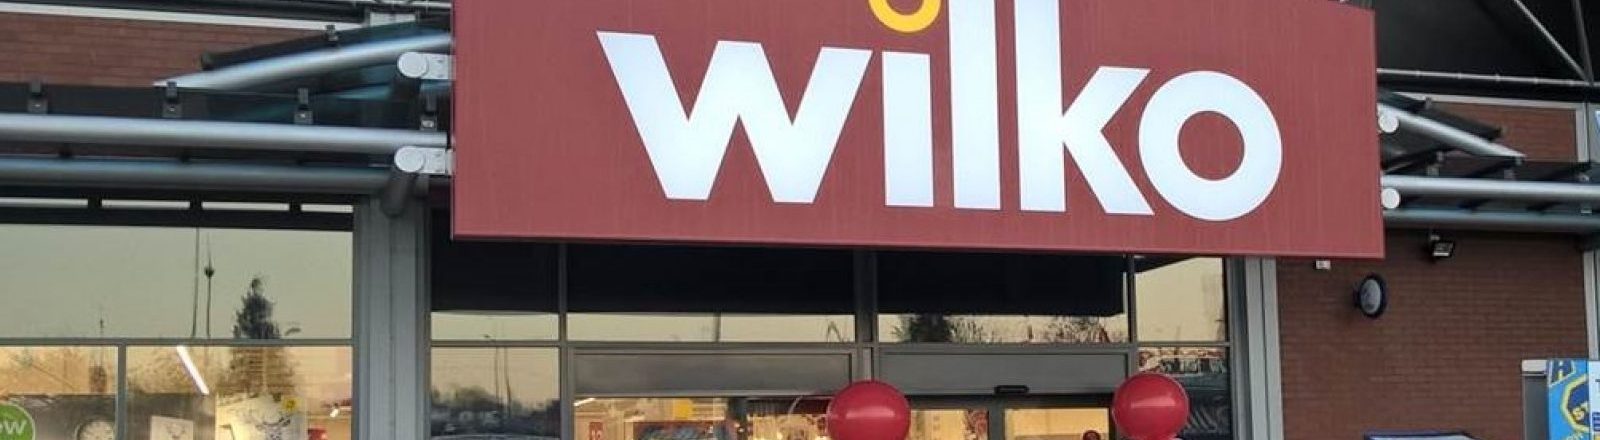 Wilko shop front in Birmingham